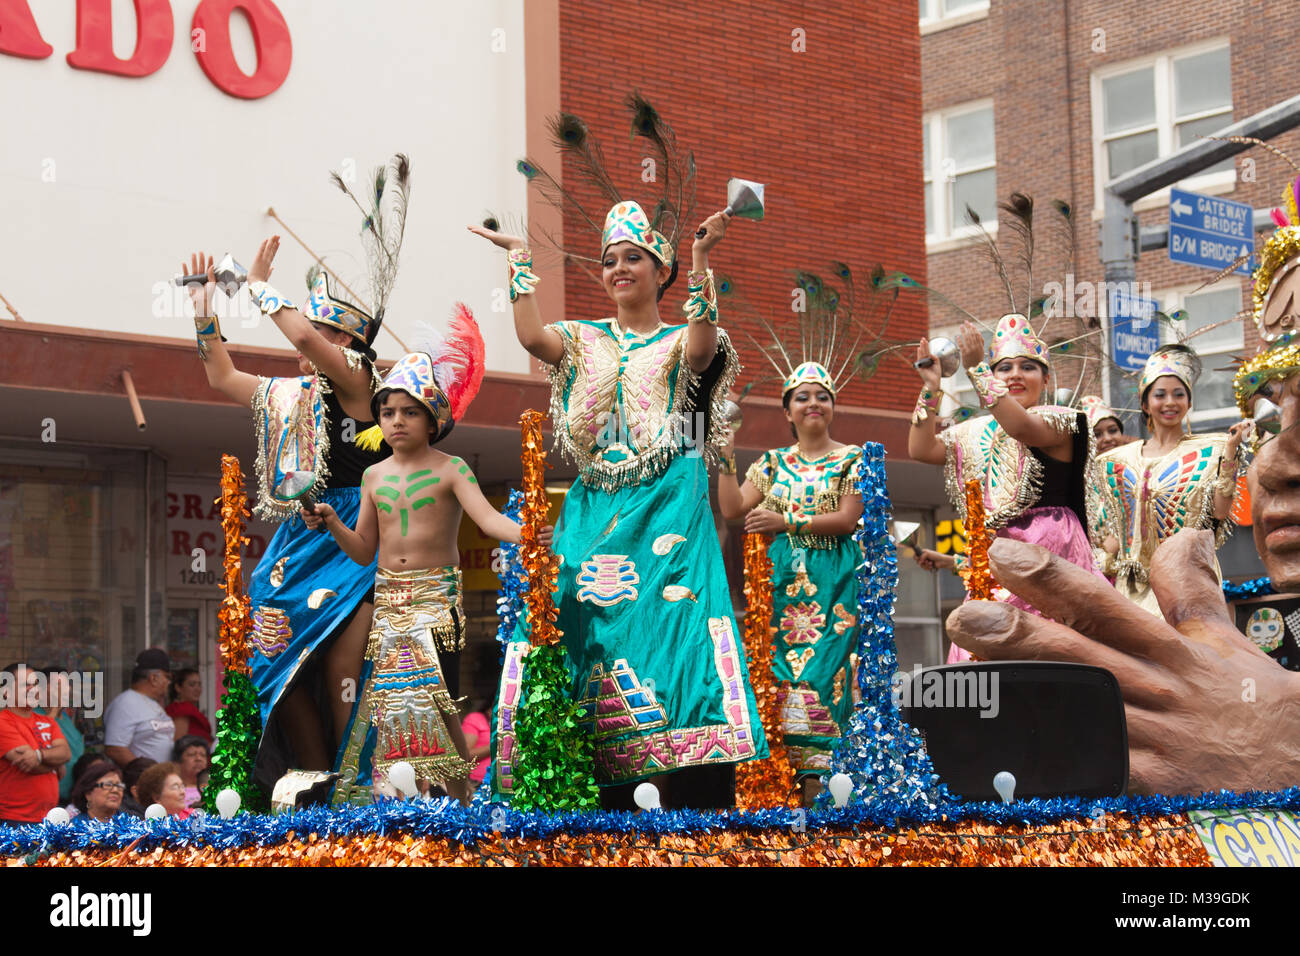 Brownsville, Texas, USA - Le 25 février 2017, Grand Parade internationale fait partie du Charro Jours Fiesta - Fiestas Mexicanas, un festival national Banque D'Images